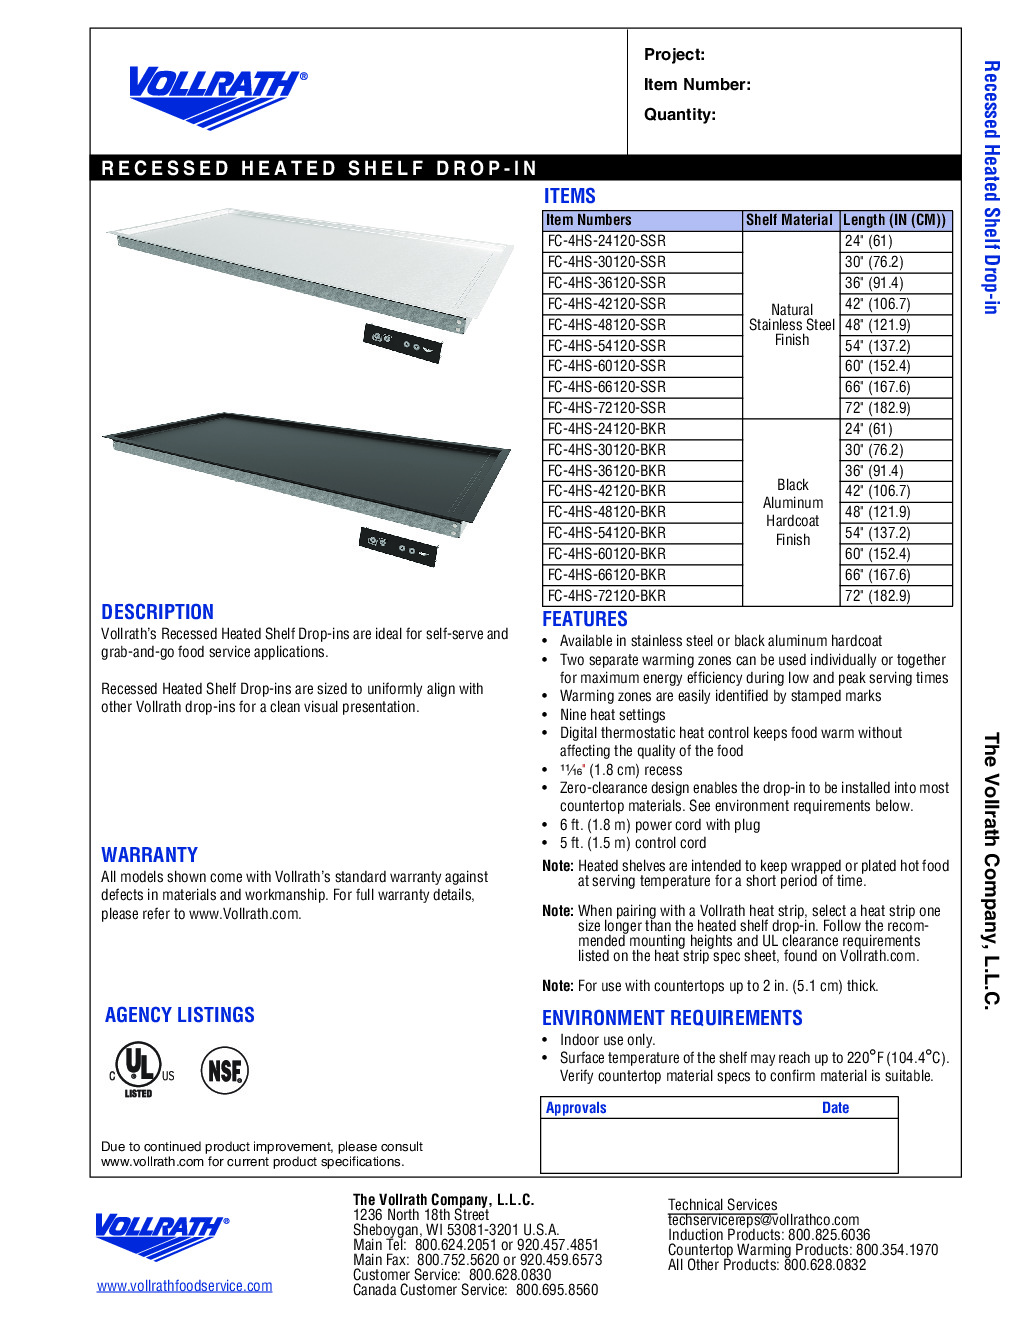 Vollrath FC-4HS-42120-SSR Heated Shelf Food Warmer